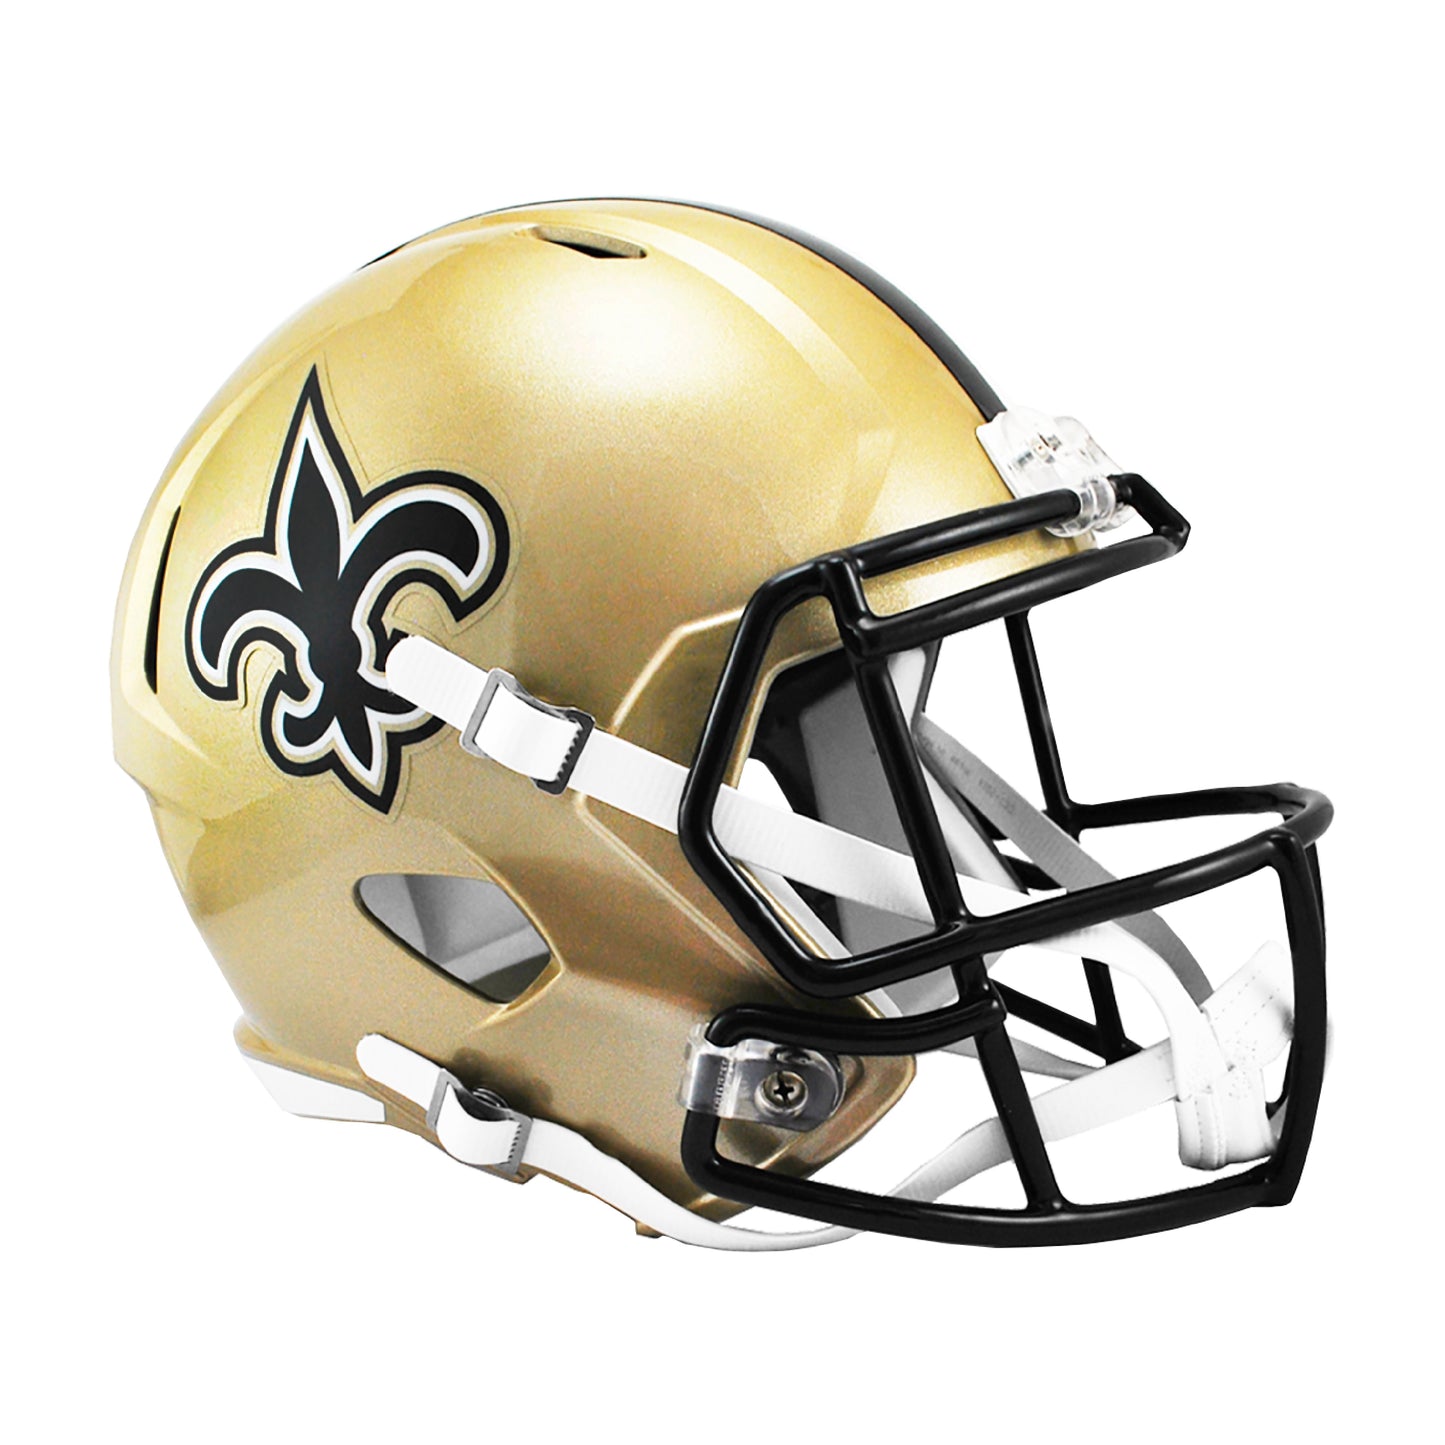 New Orleans Saints Riddell Speed Full Size Replica Football Helmet